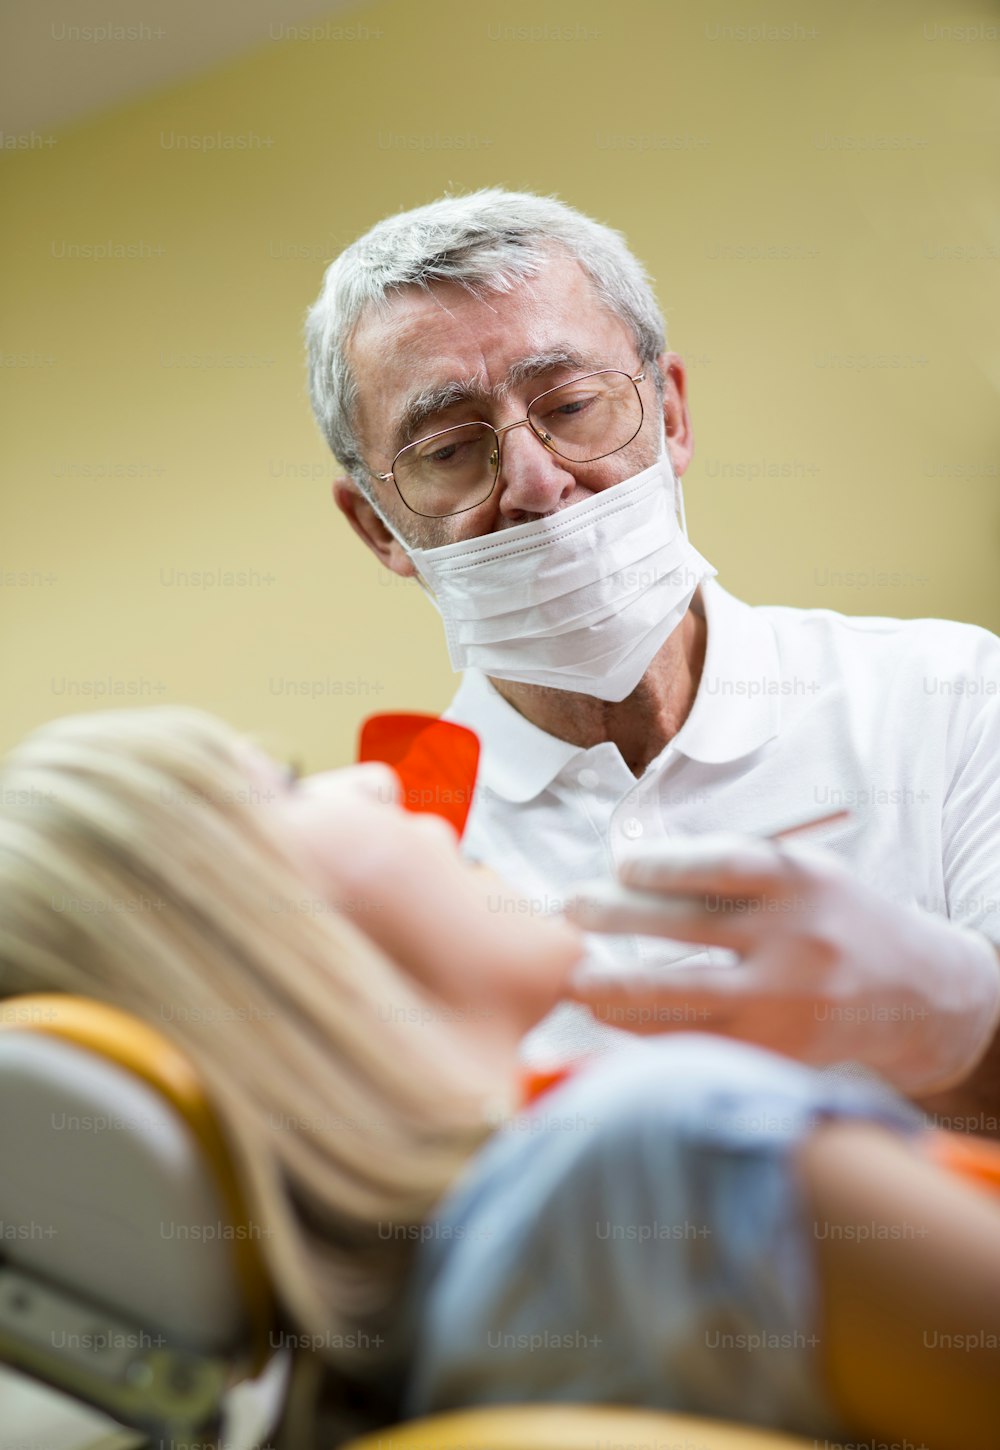 Le patient reçoit un traitement dentaire